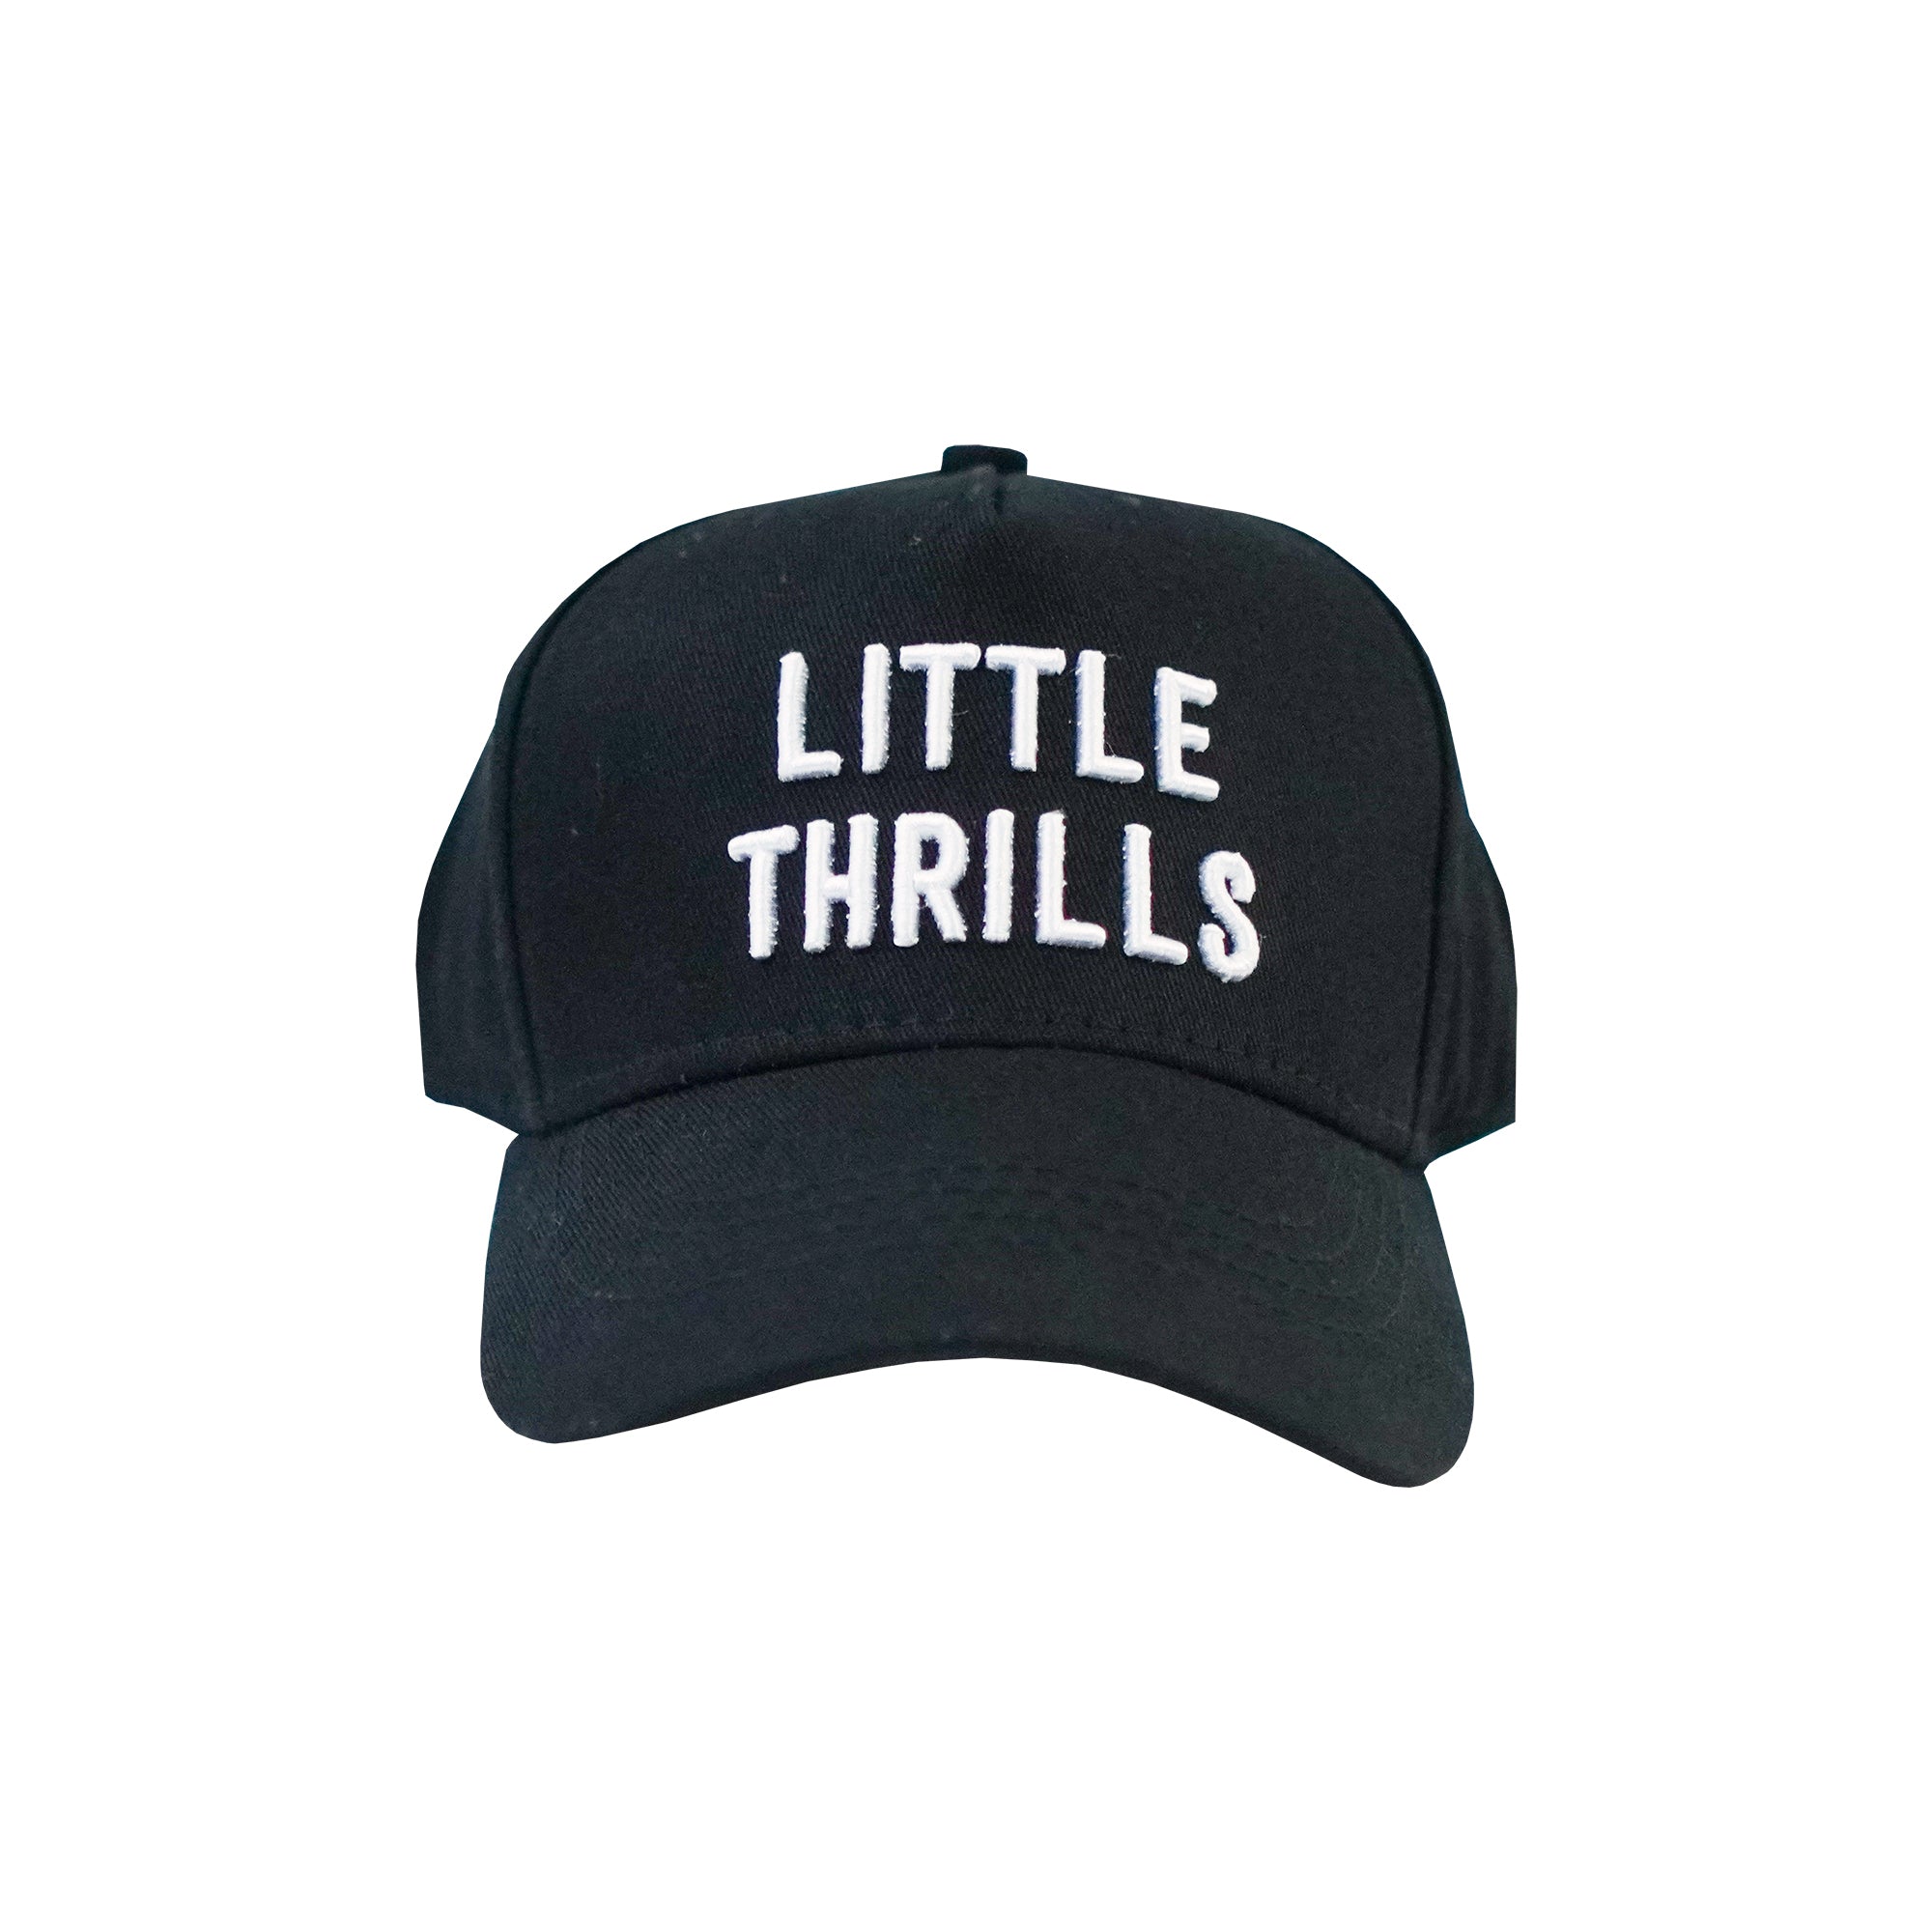 LITTLE THRILLS A-FRAME HATS